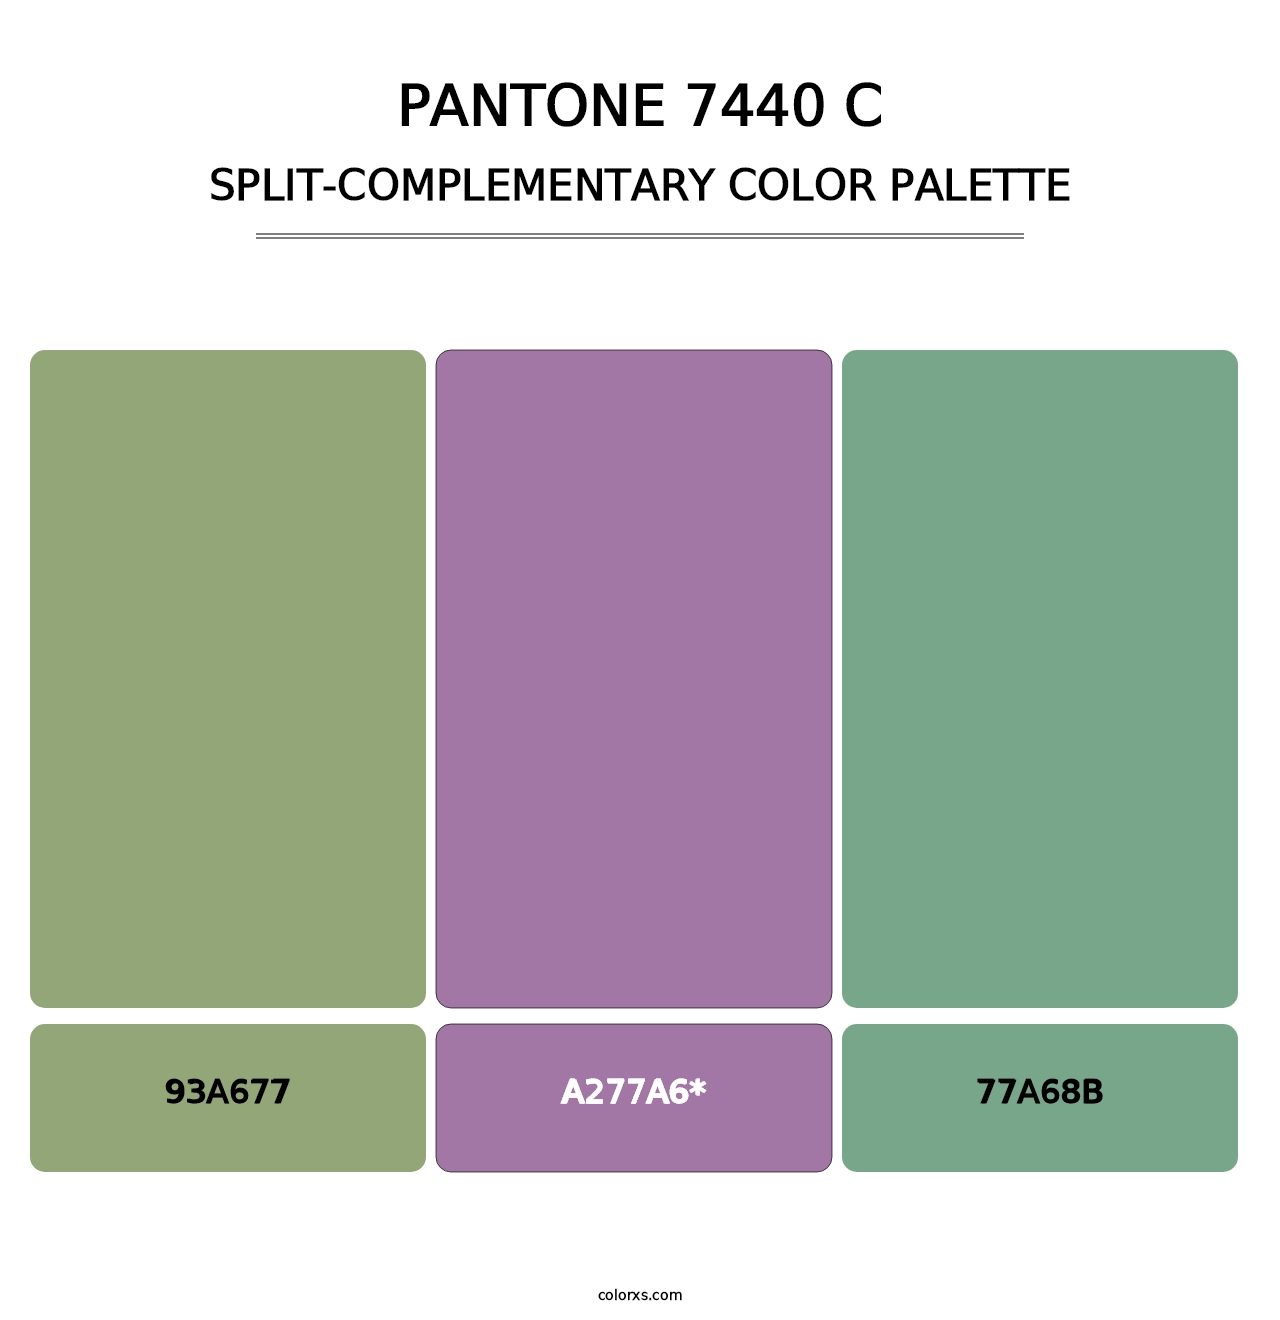 PANTONE 7440 C - Split-Complementary Color Palette